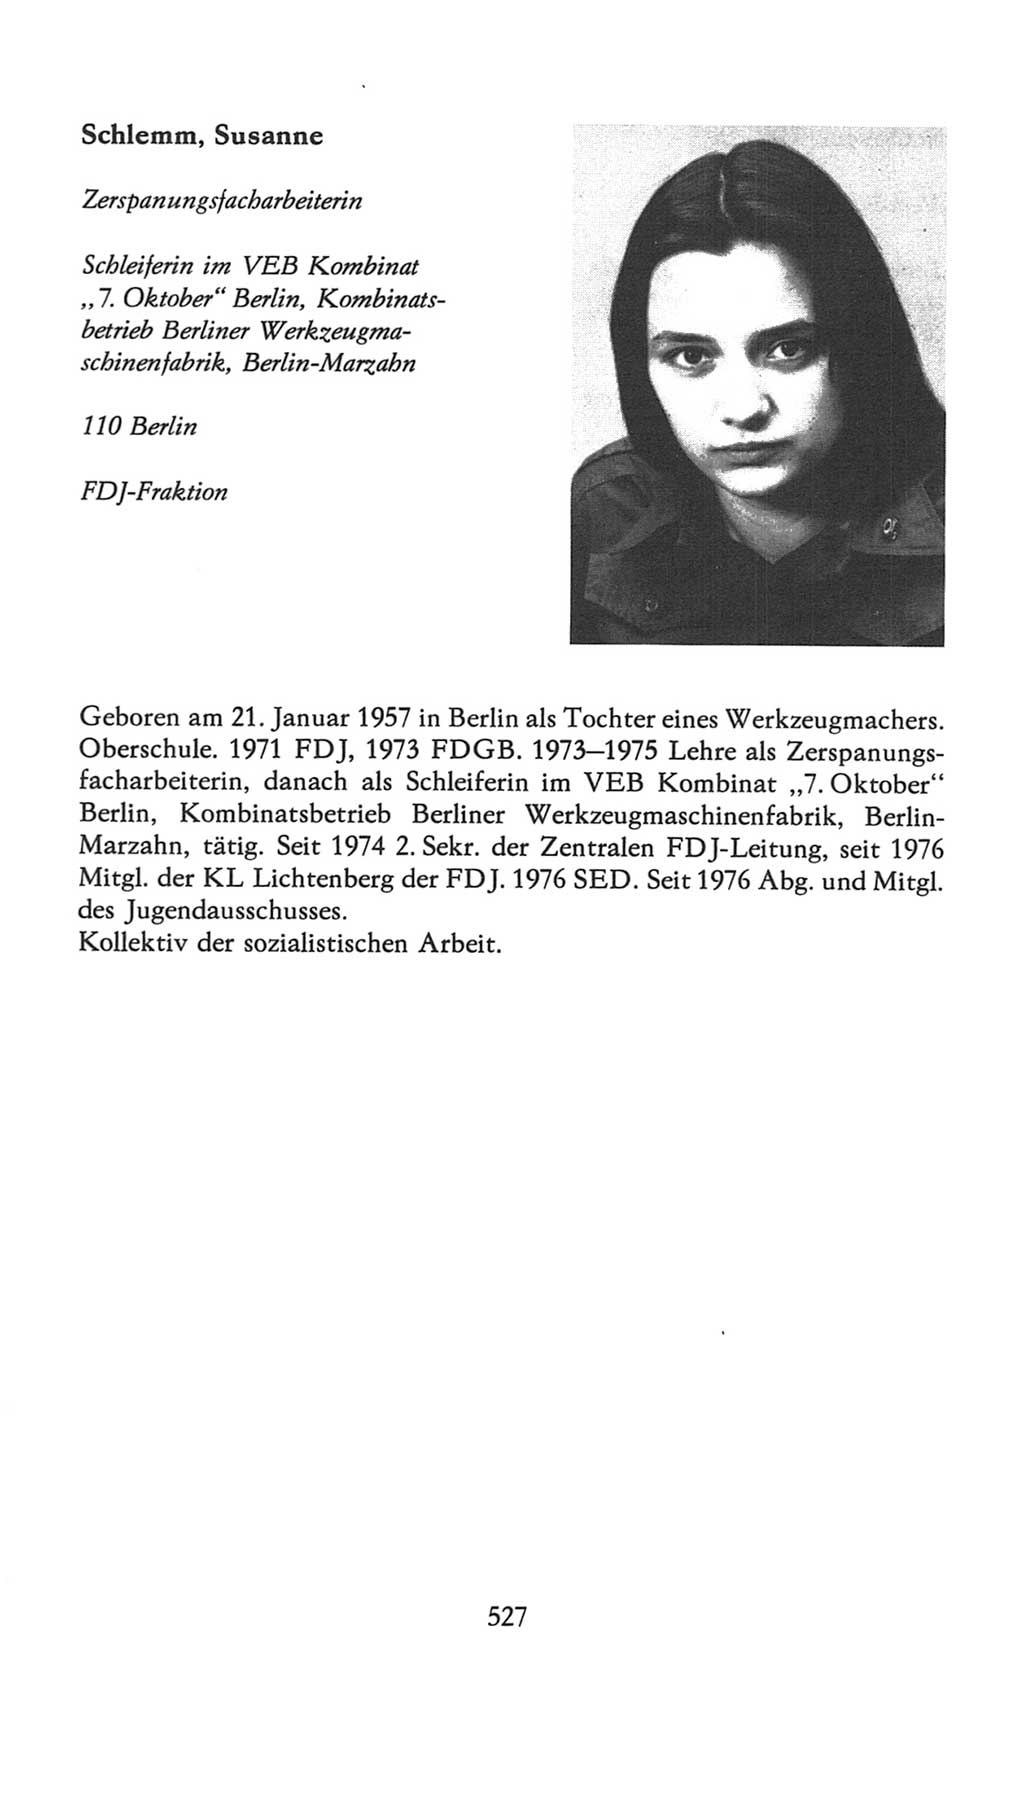 Volkskammer (VK) der Deutschen Demokratischen Republik (DDR), 7. Wahlperiode 1976-1981, Seite 527 (VK. DDR 7. WP. 1976-1981, S. 527)